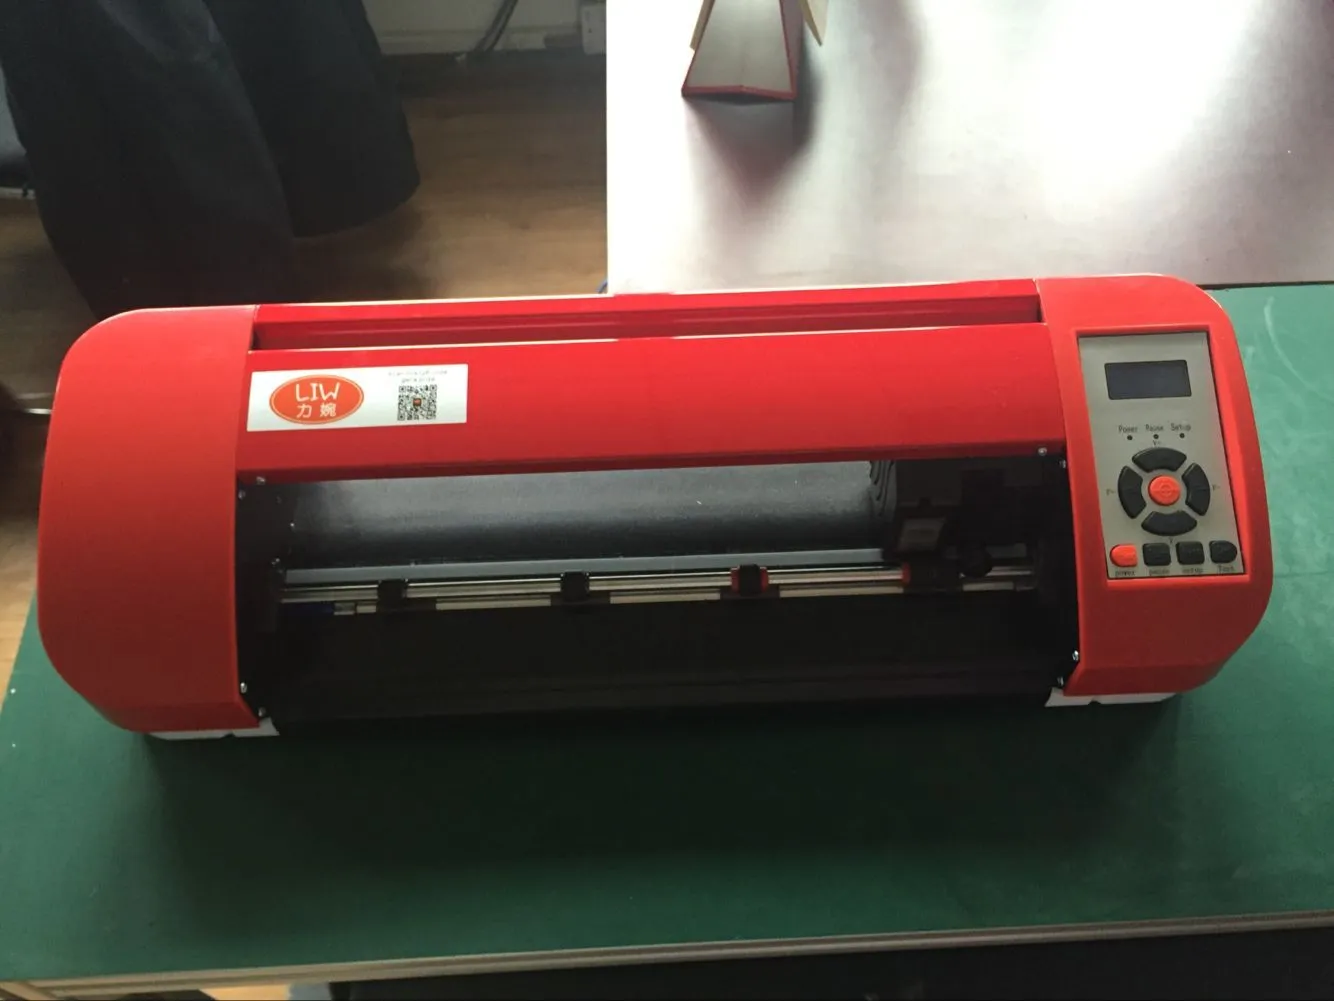 Traceur de bureau de coupeur de vinyle d'imprimantes avec la fonction automatique de découpe